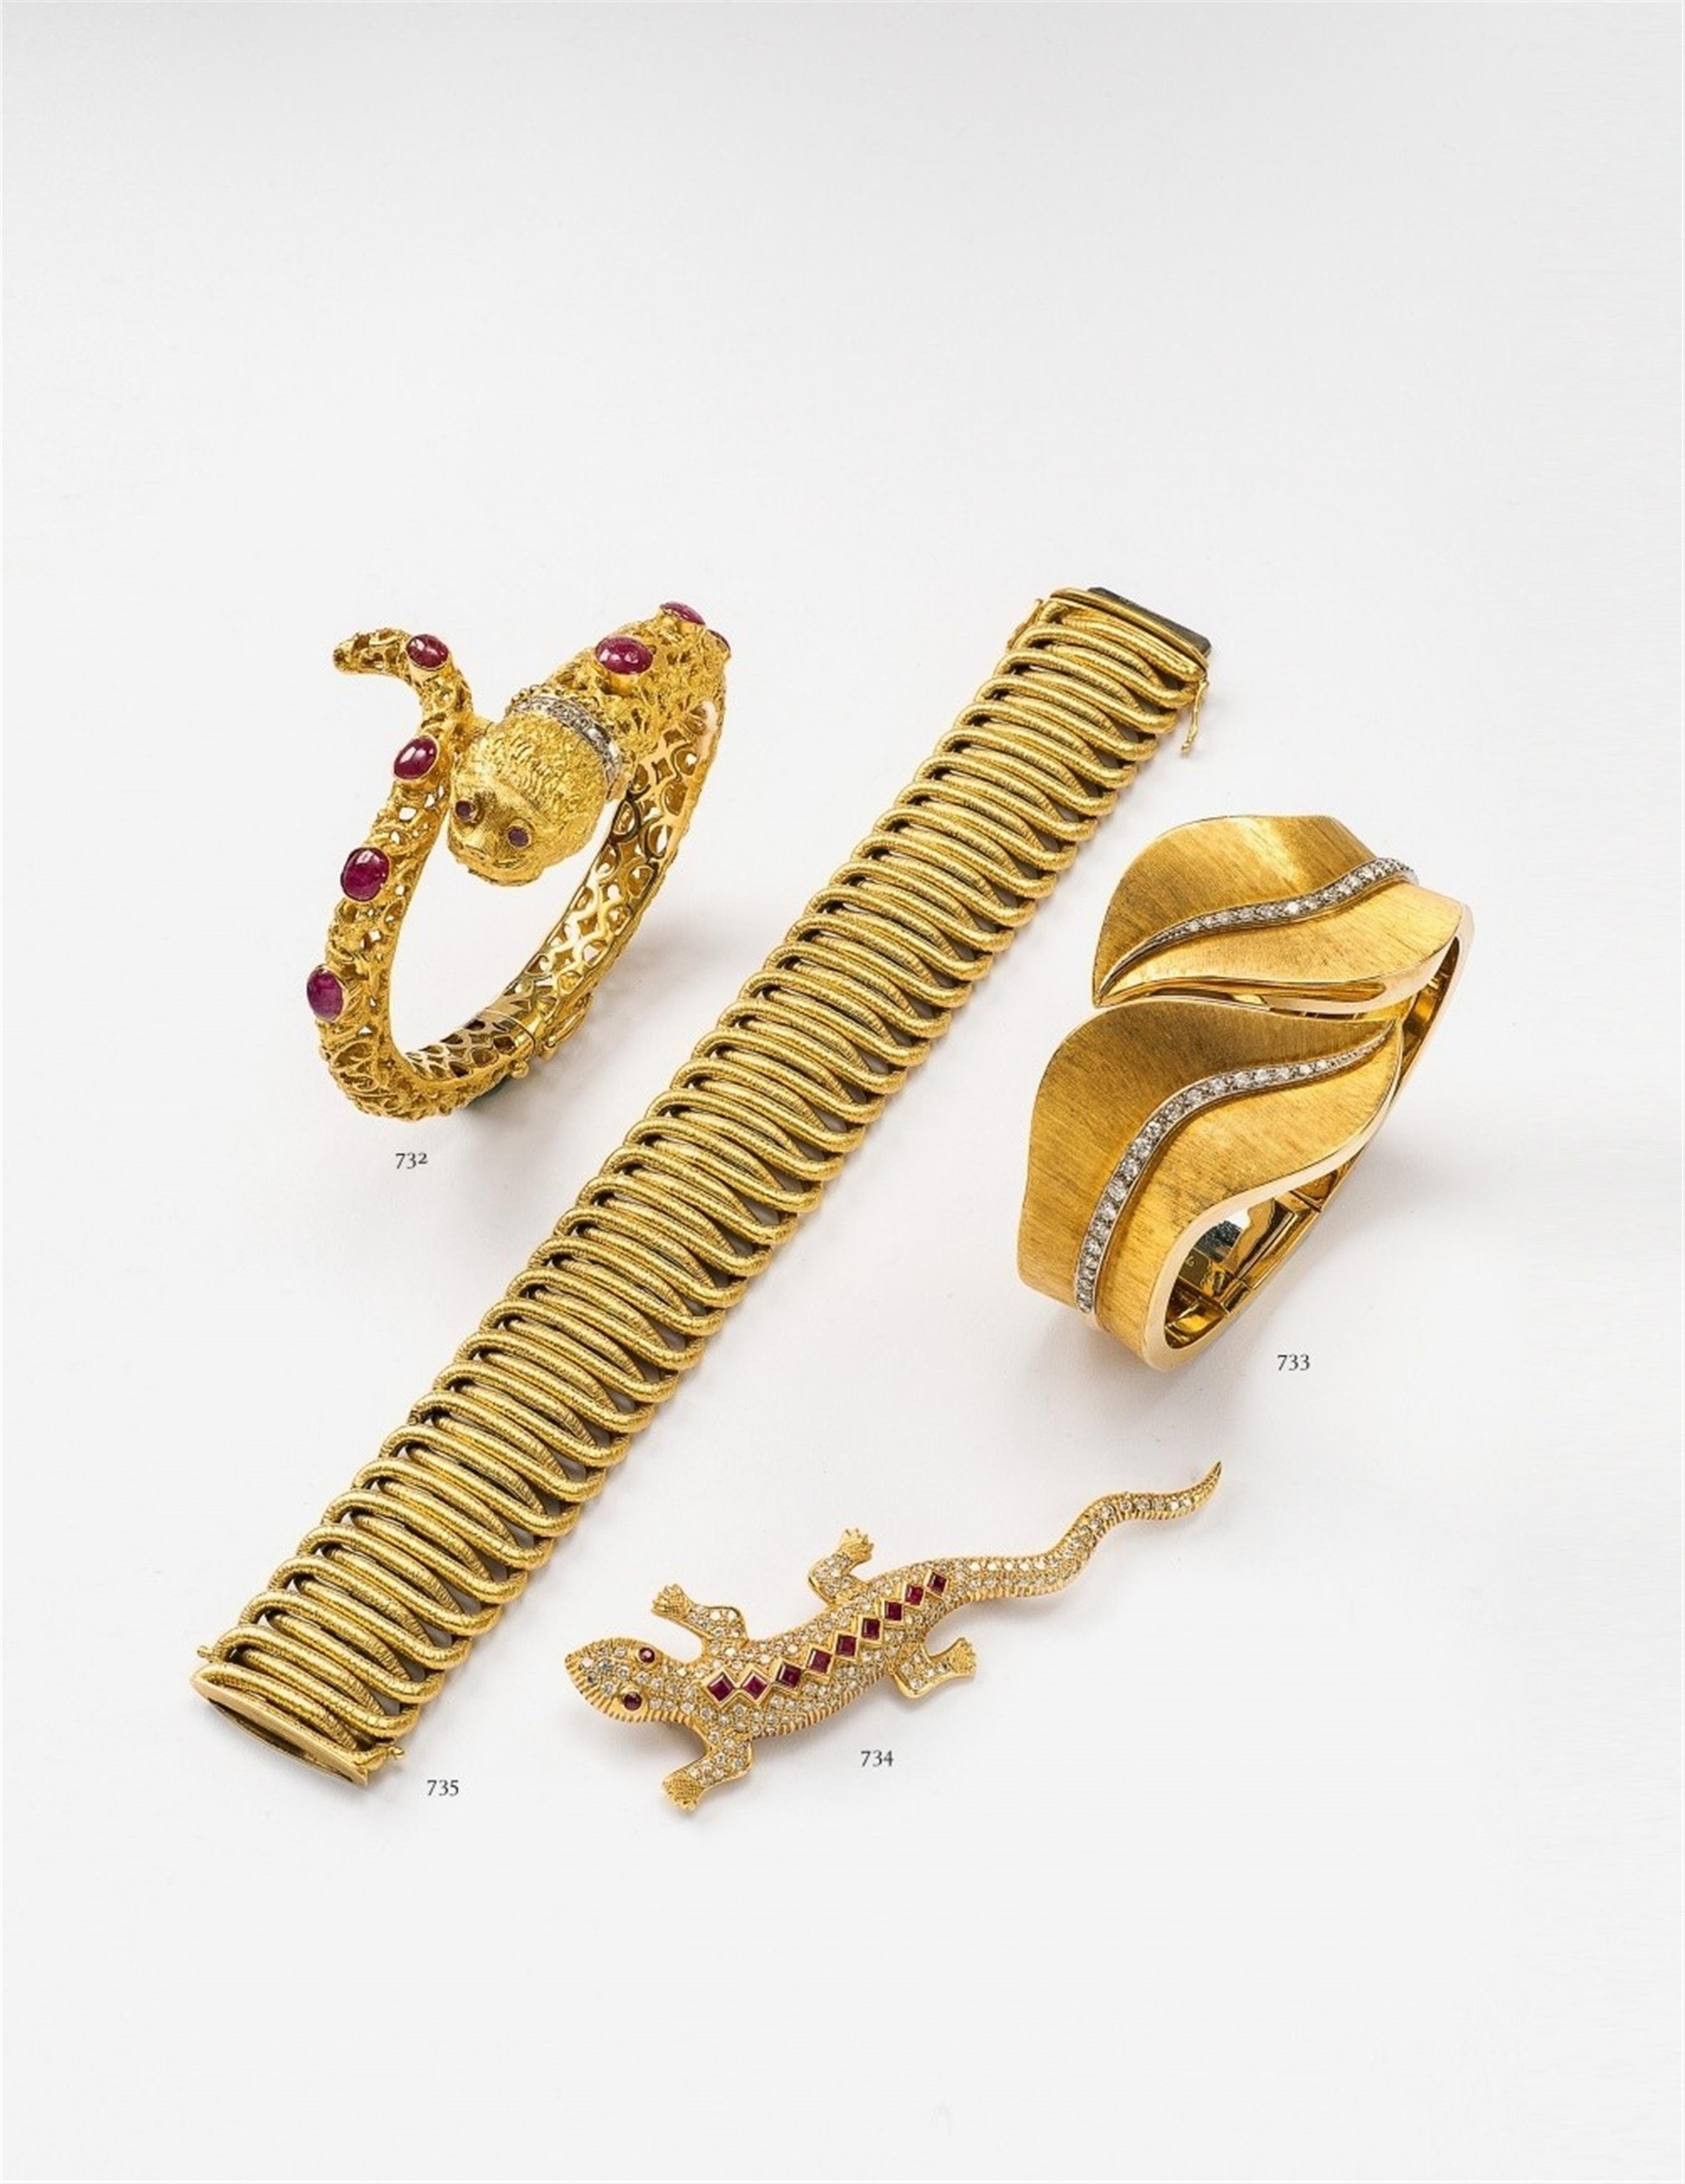 An 18k gold and diamond cuff bangle - image-2